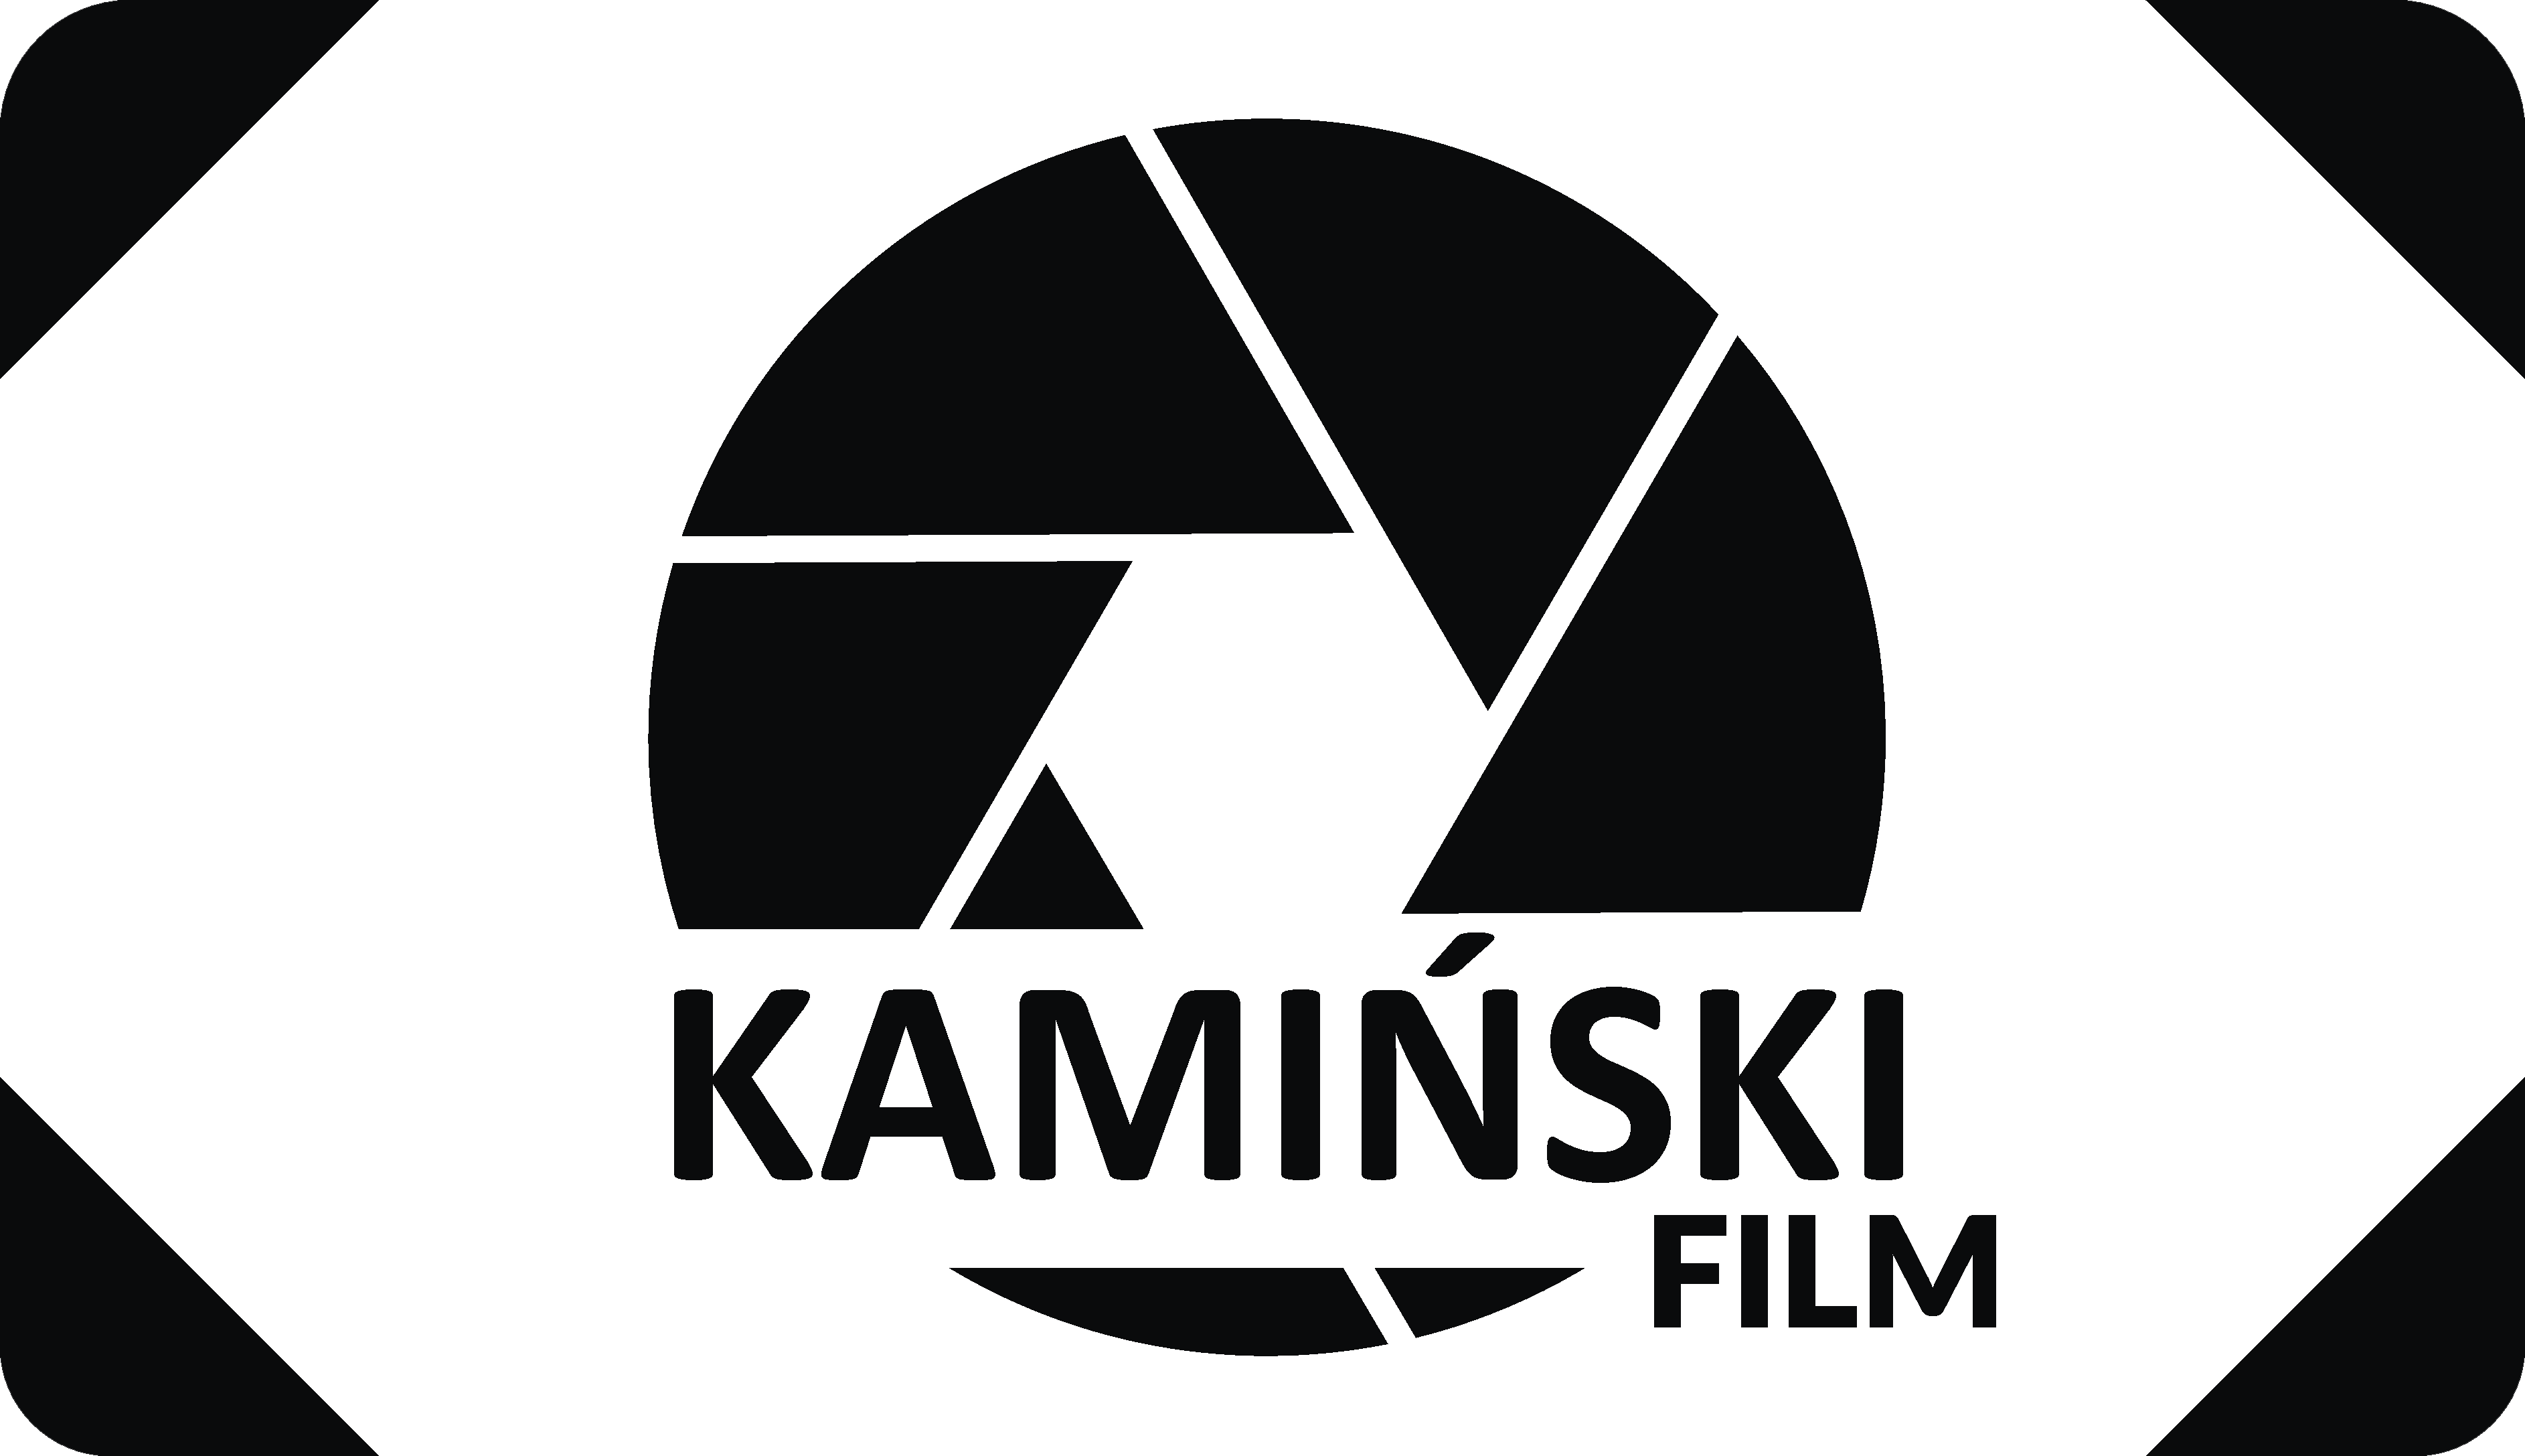 Kamiński FILM